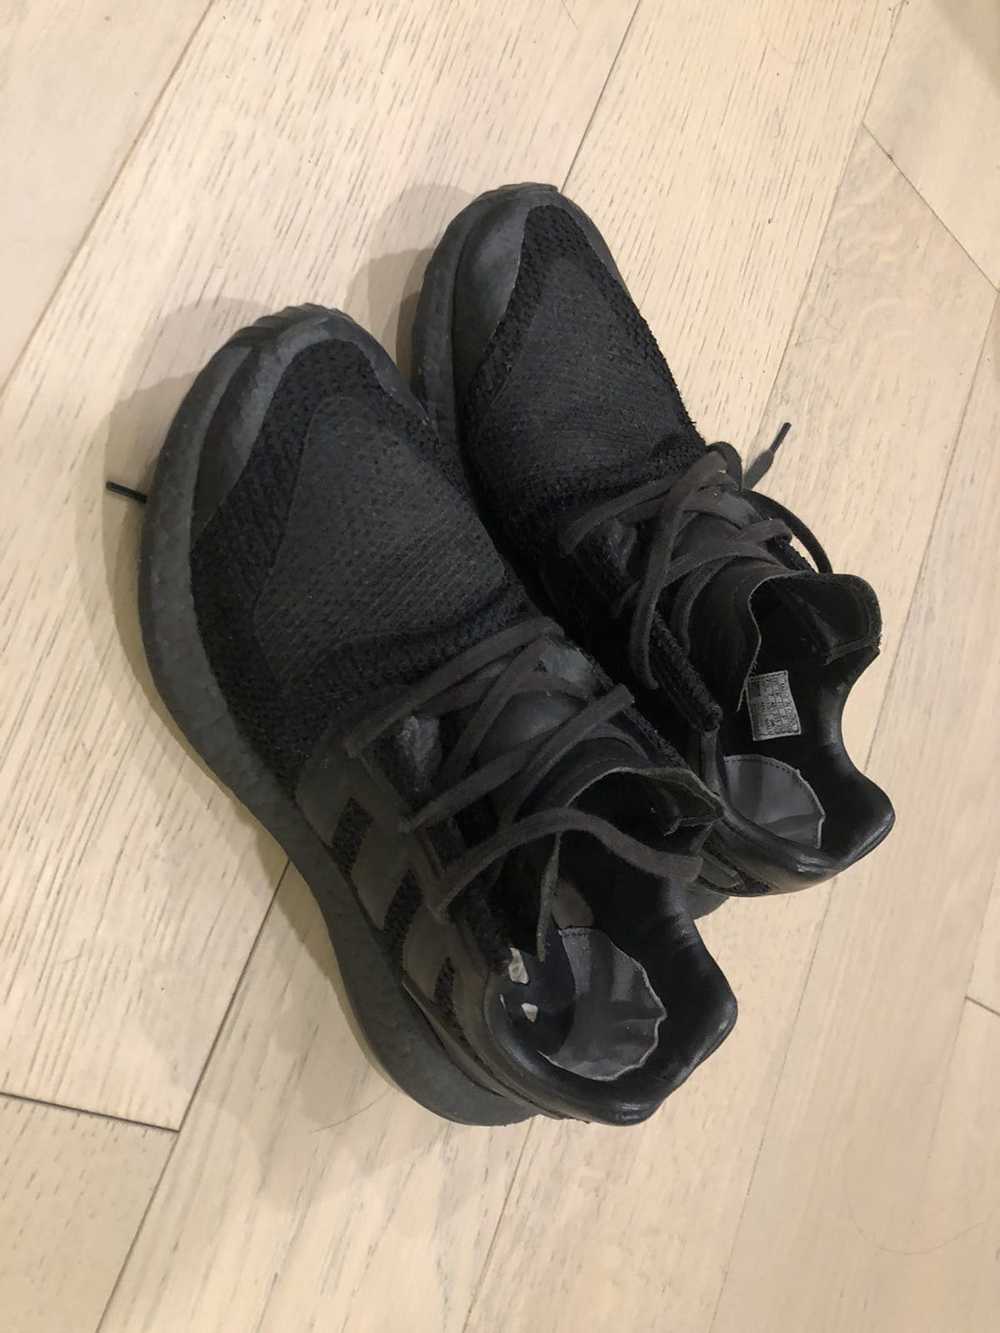 Adidas × Y-3 Y-3 PureBoost Triple Black 2017 - image 1